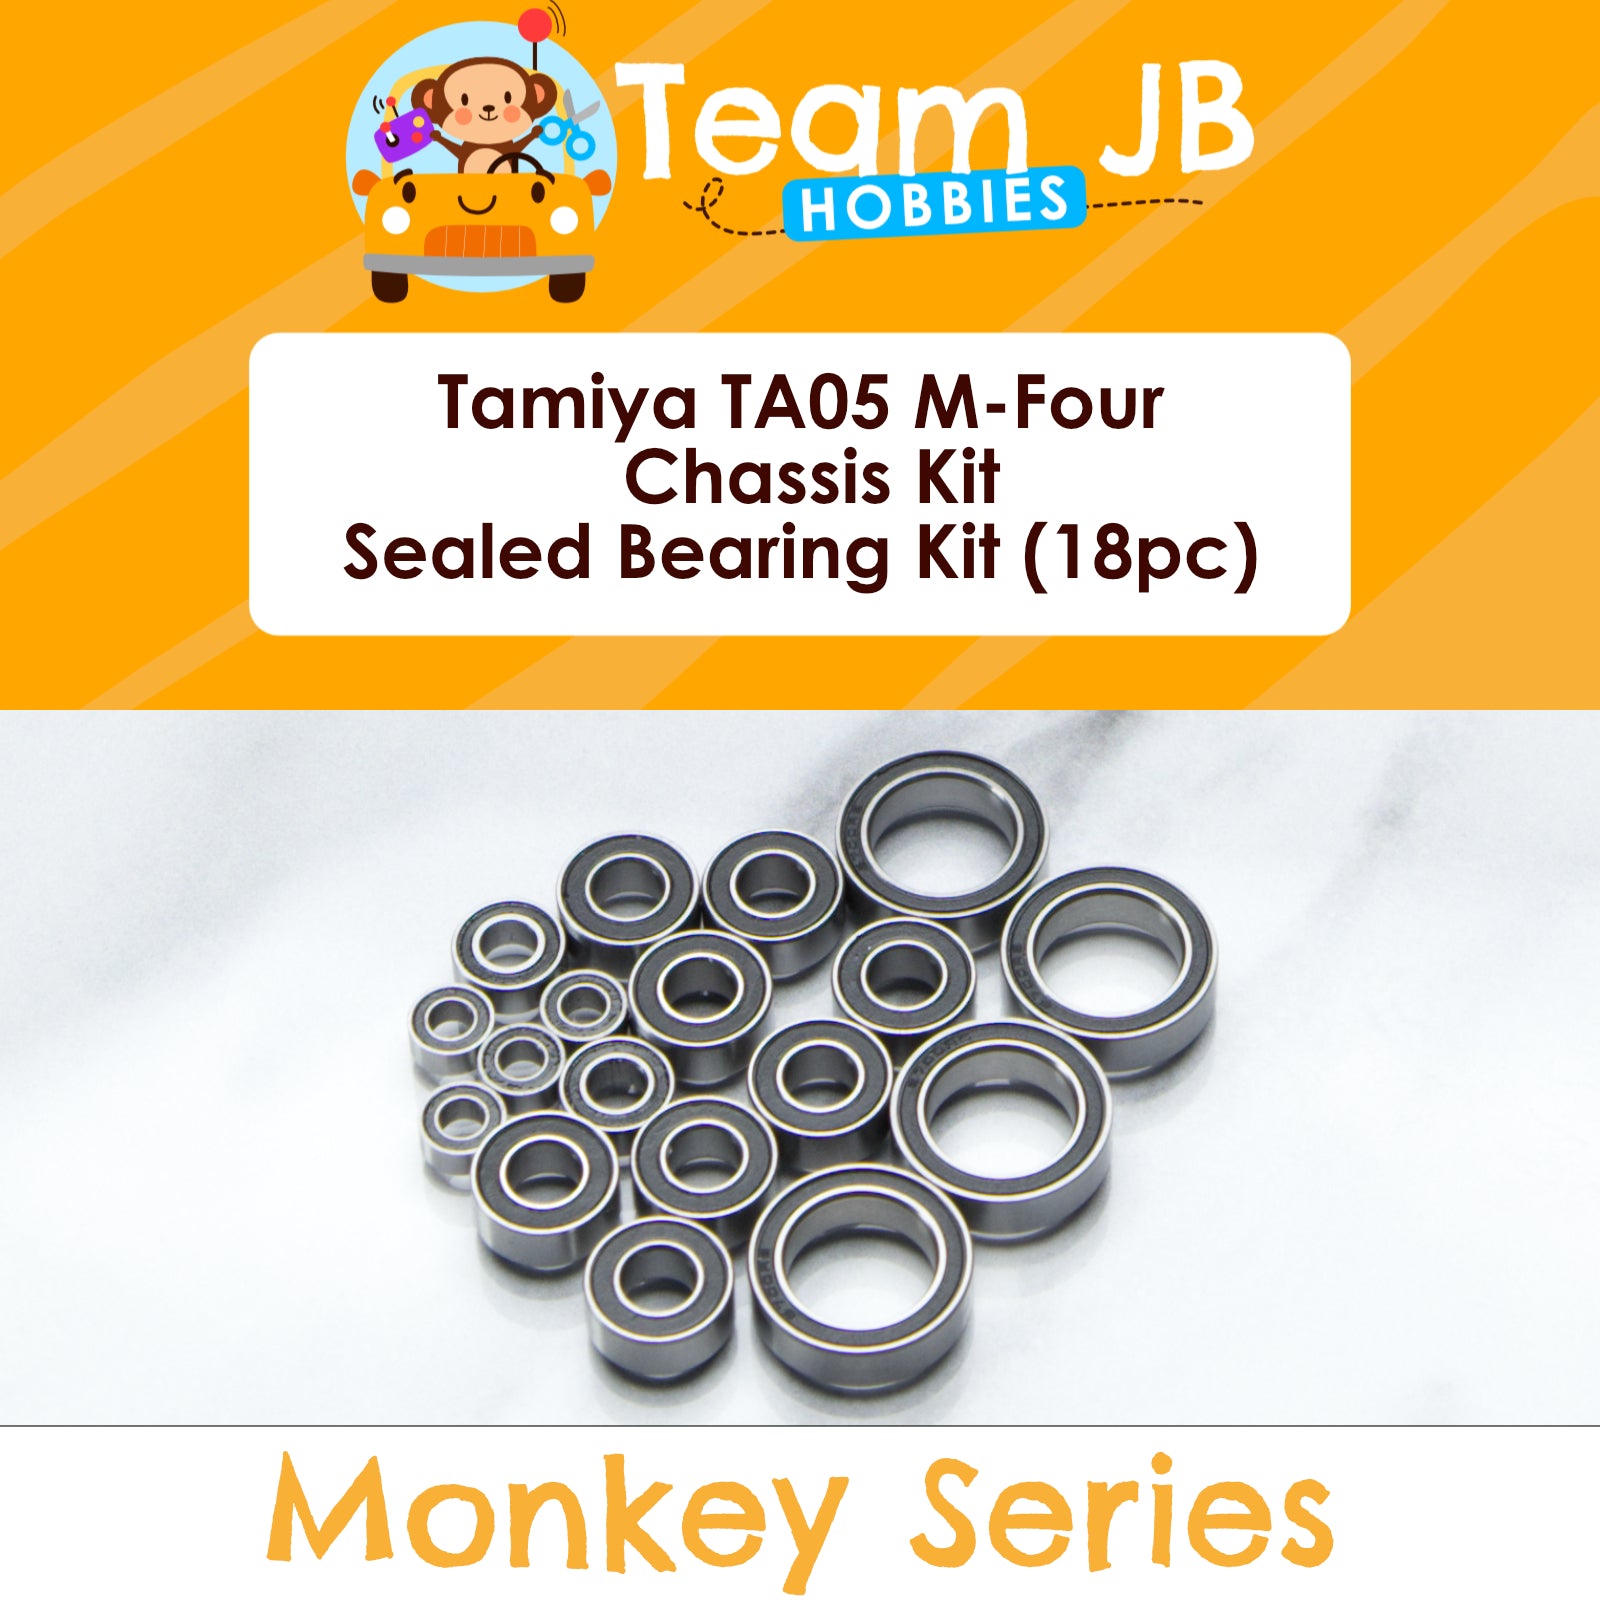 Tamiya TA05 M-Four Chassis Kit - Sealed Bearing Kit